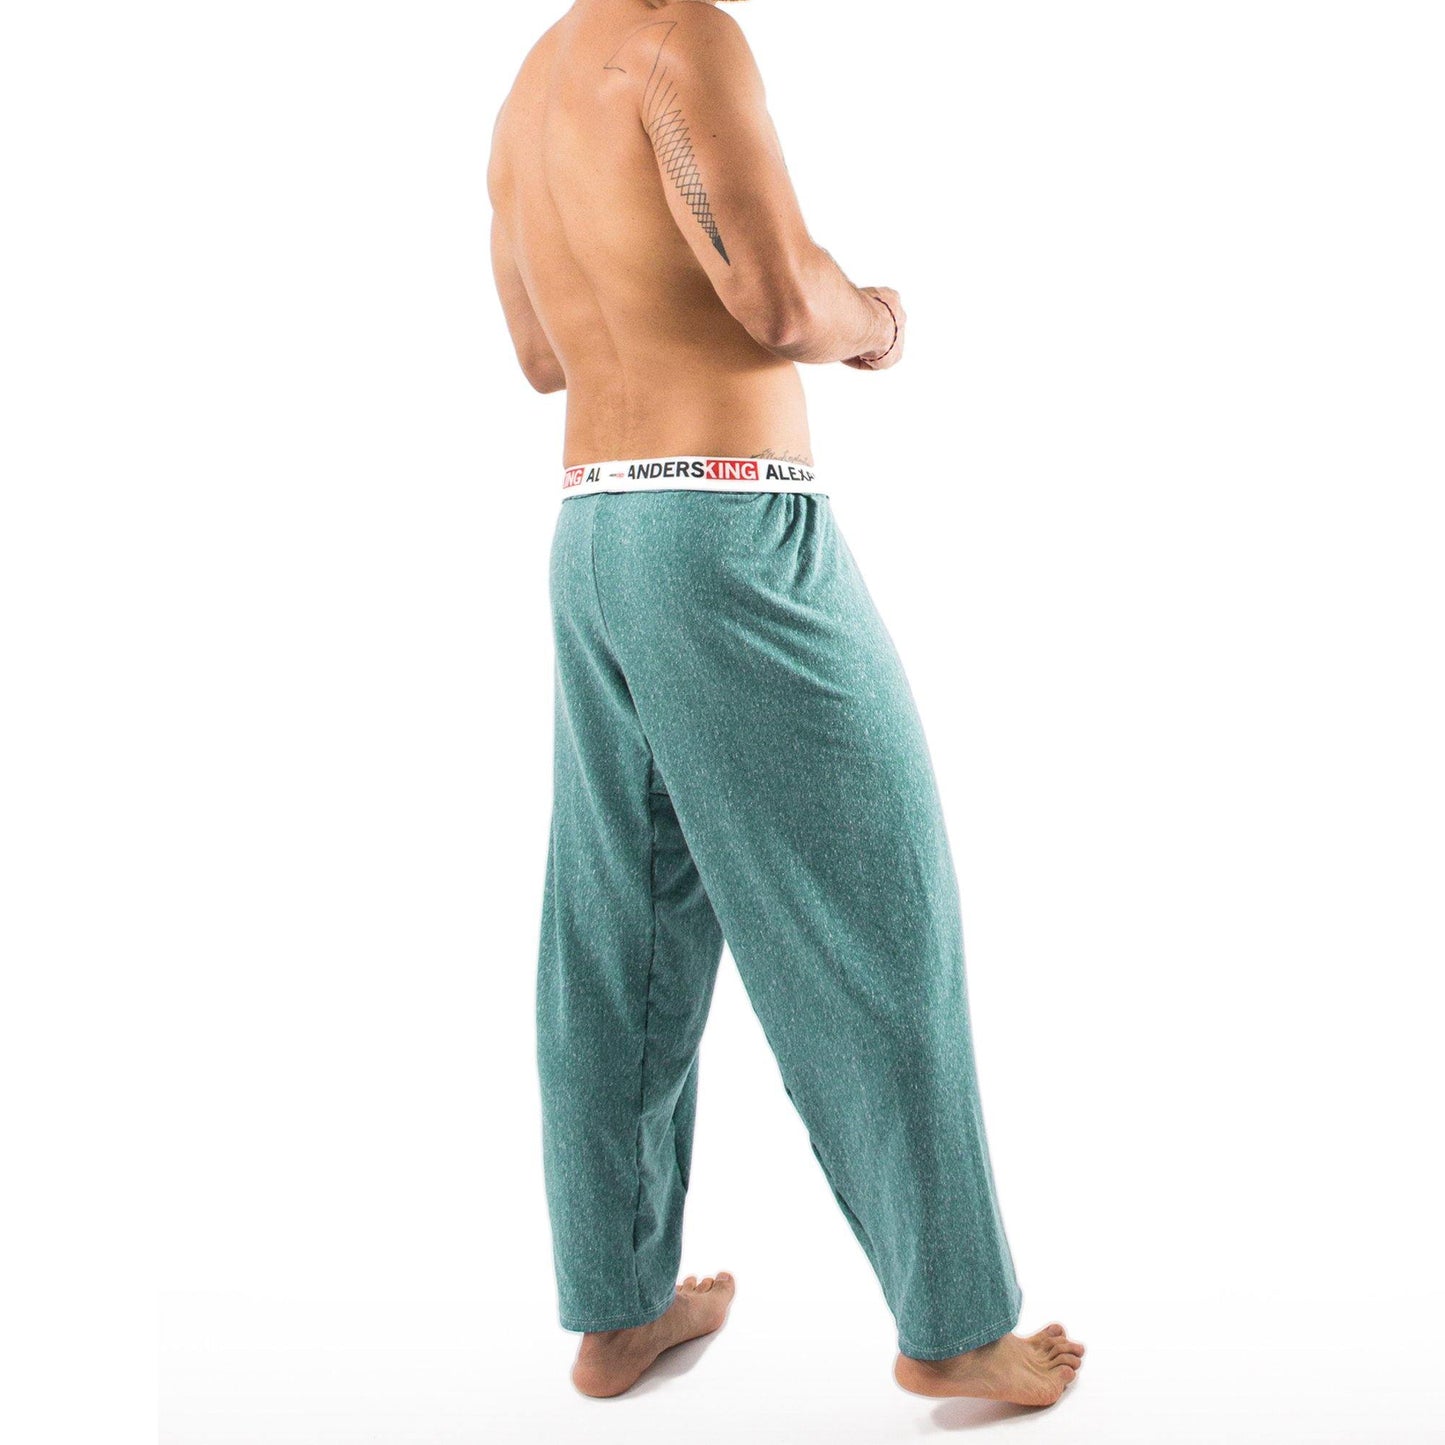 PP0002- PantalÌ?n Pijama Tranquil - AlexandersKing Underwear